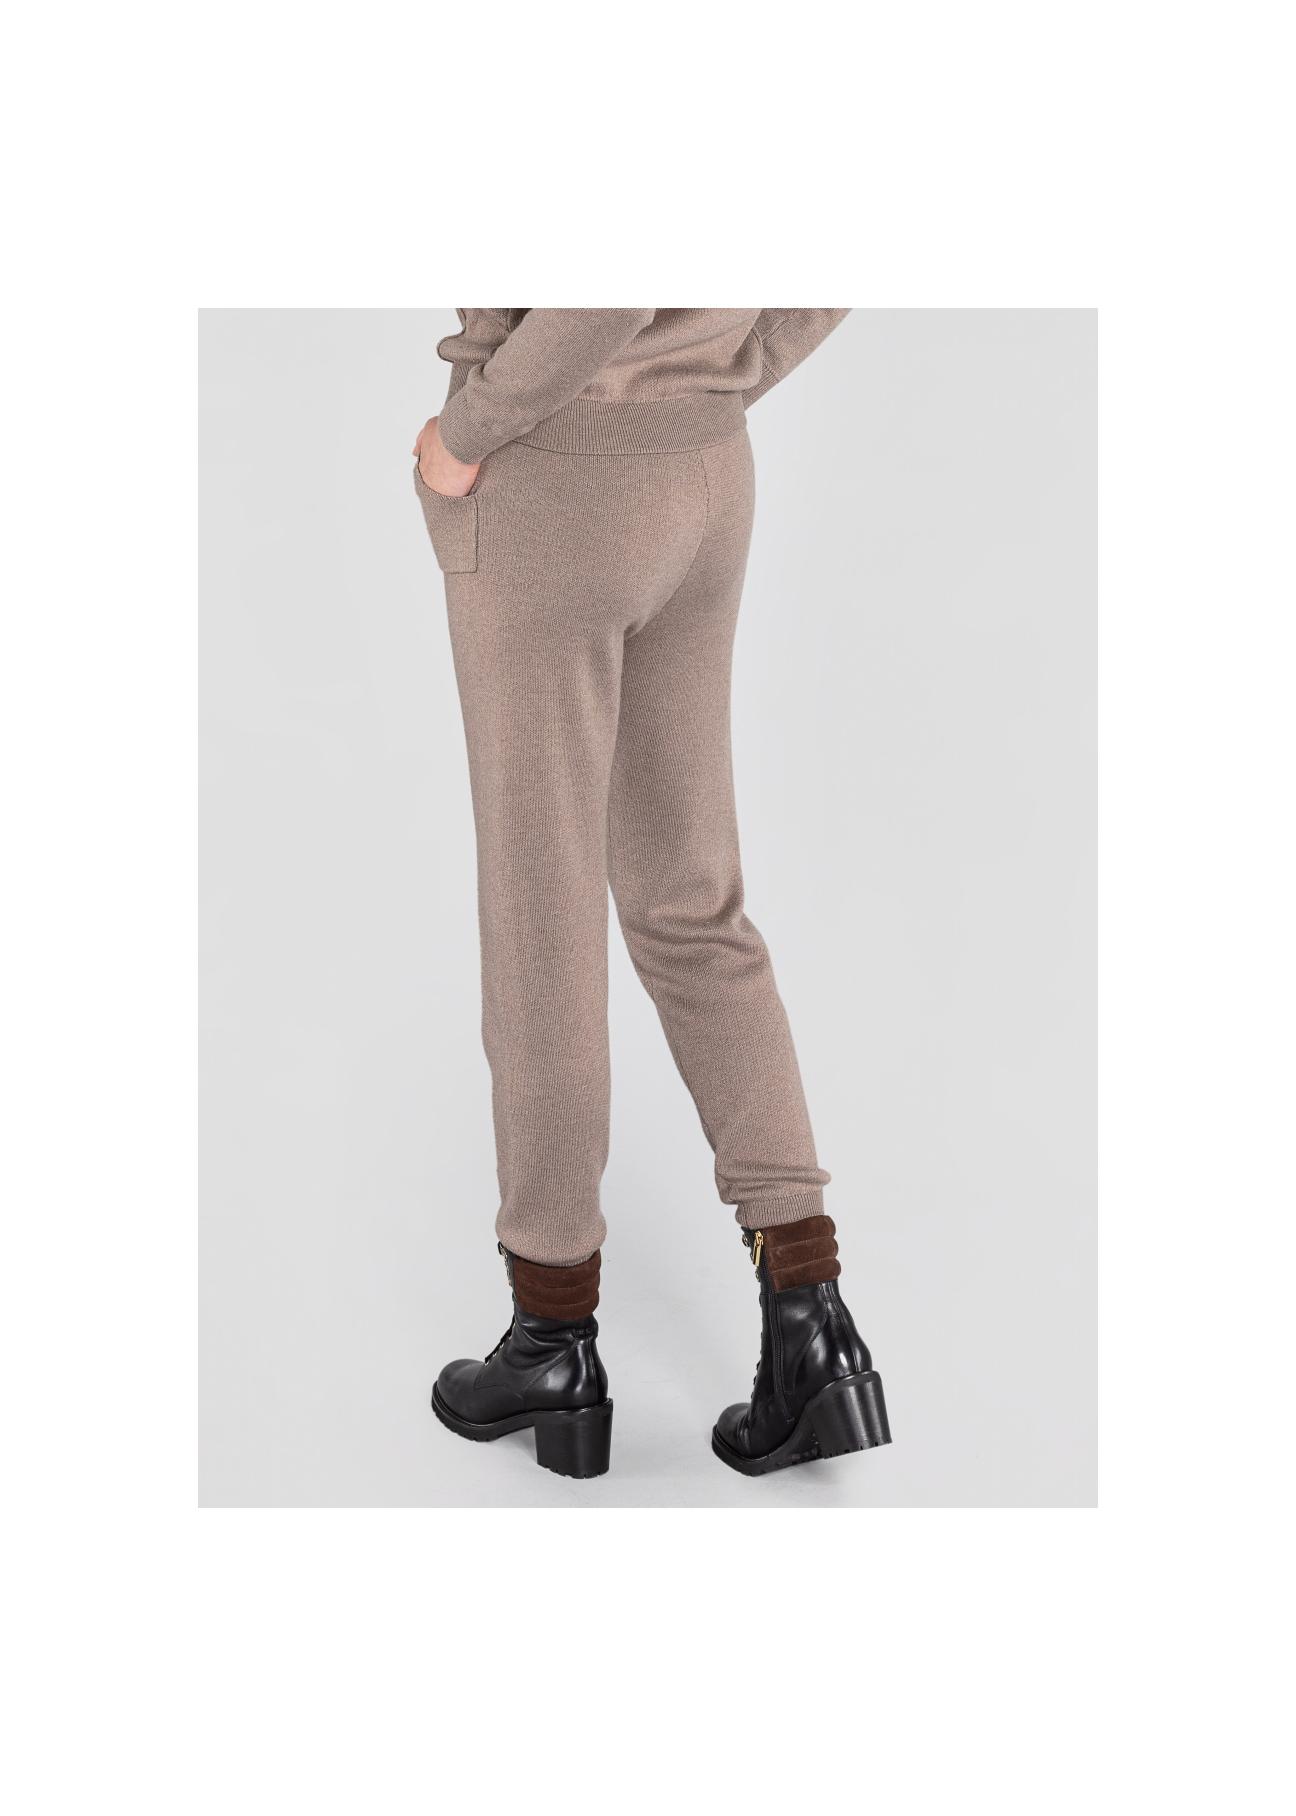 Beżowe spodnie dresowe damskie SPODT-0047-81(Z20)